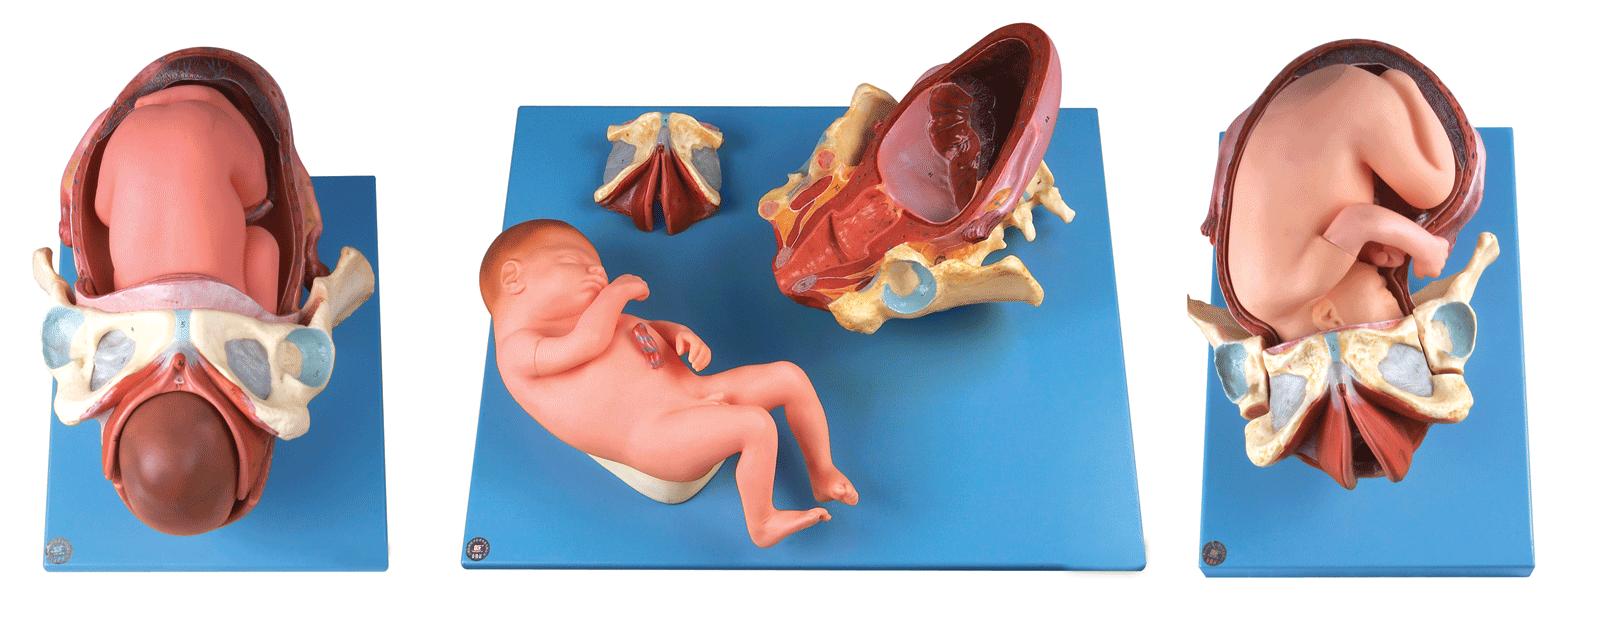 足月胎儿分娩过程模型.jpg